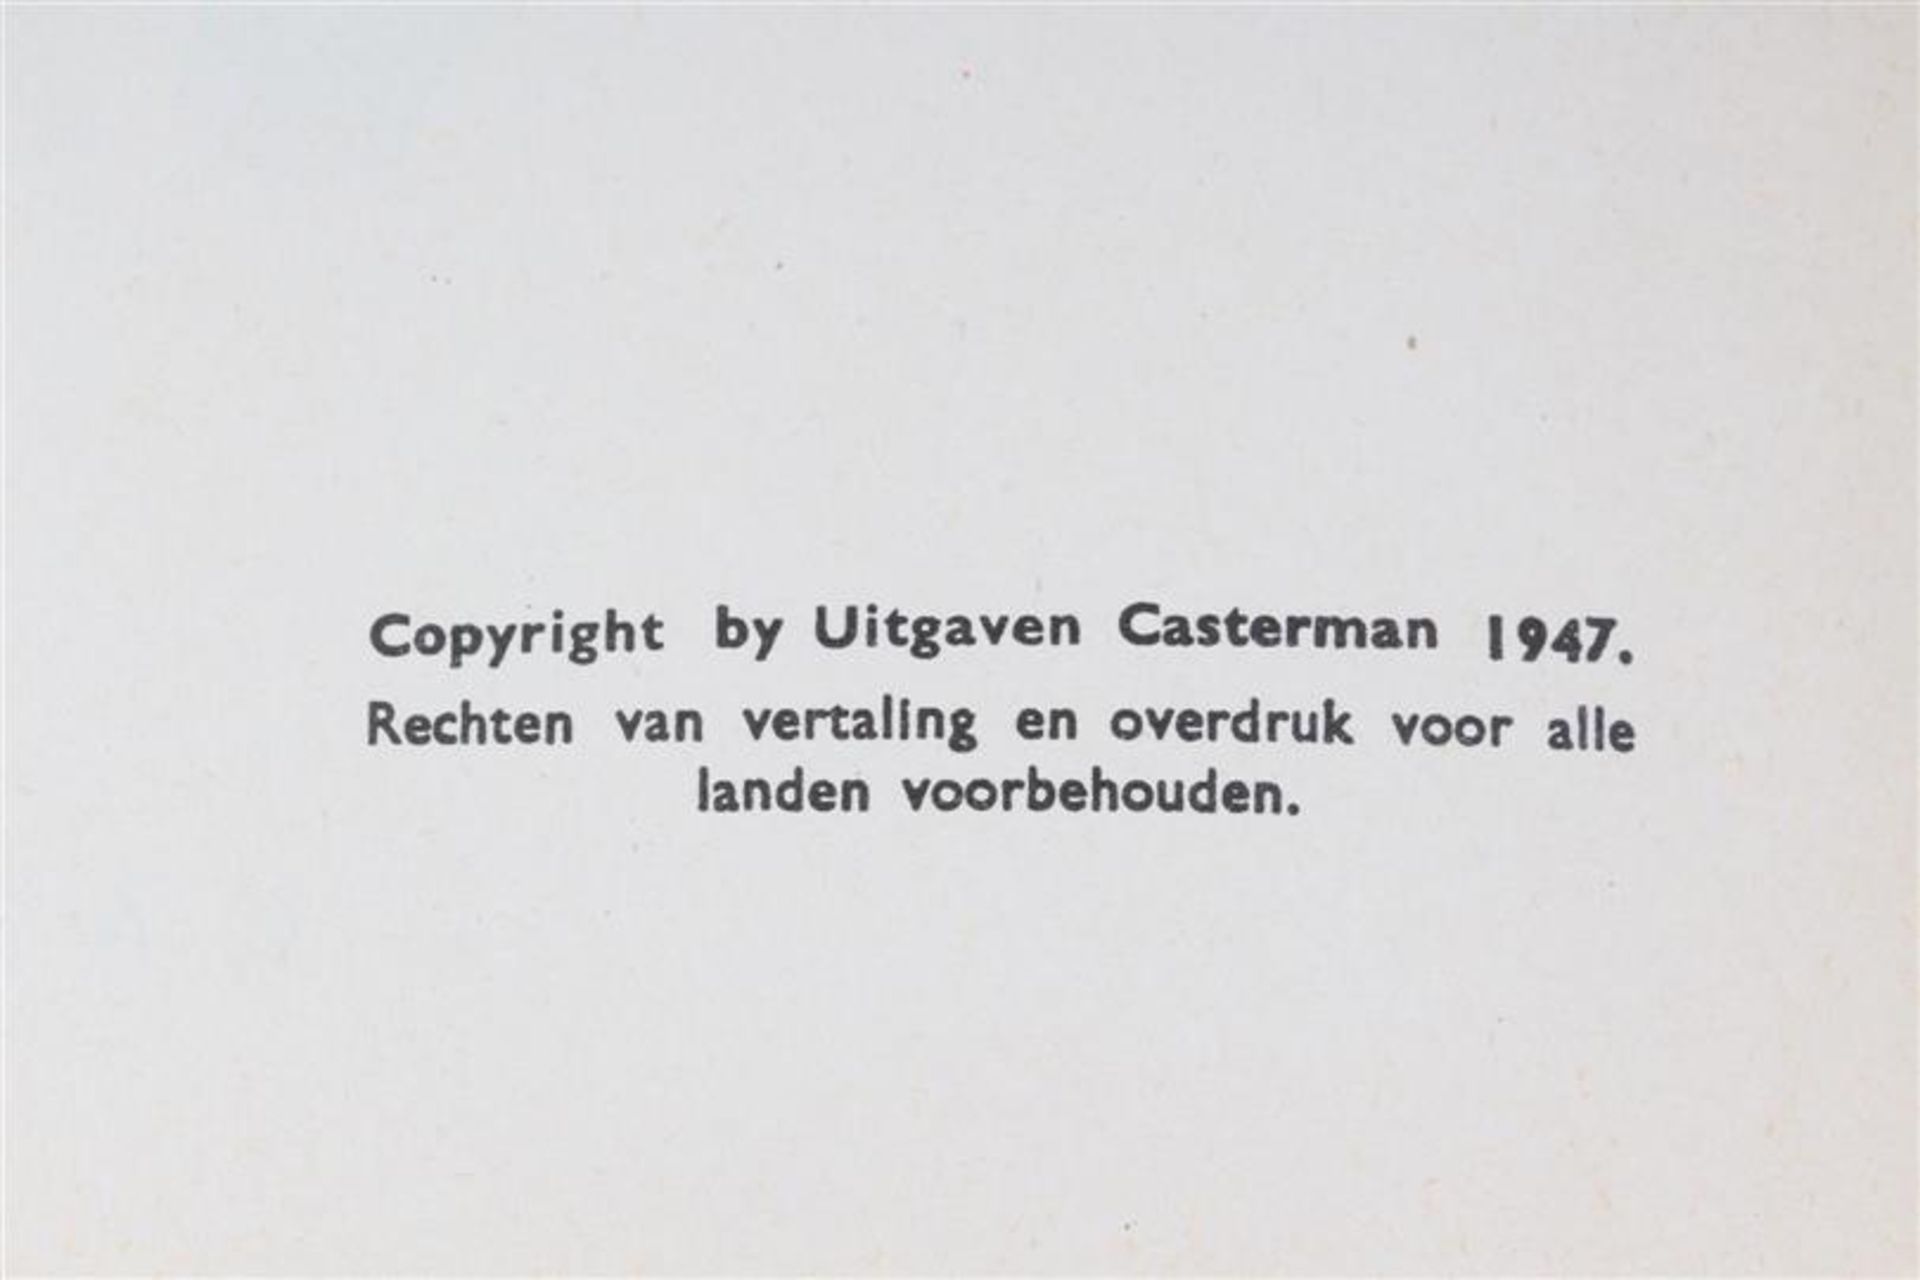 De avonturen van Kuifje, Hergé, uitgeverij Casterman, 7 hardcovers en drie softcovers. - Bild 12 aus 17